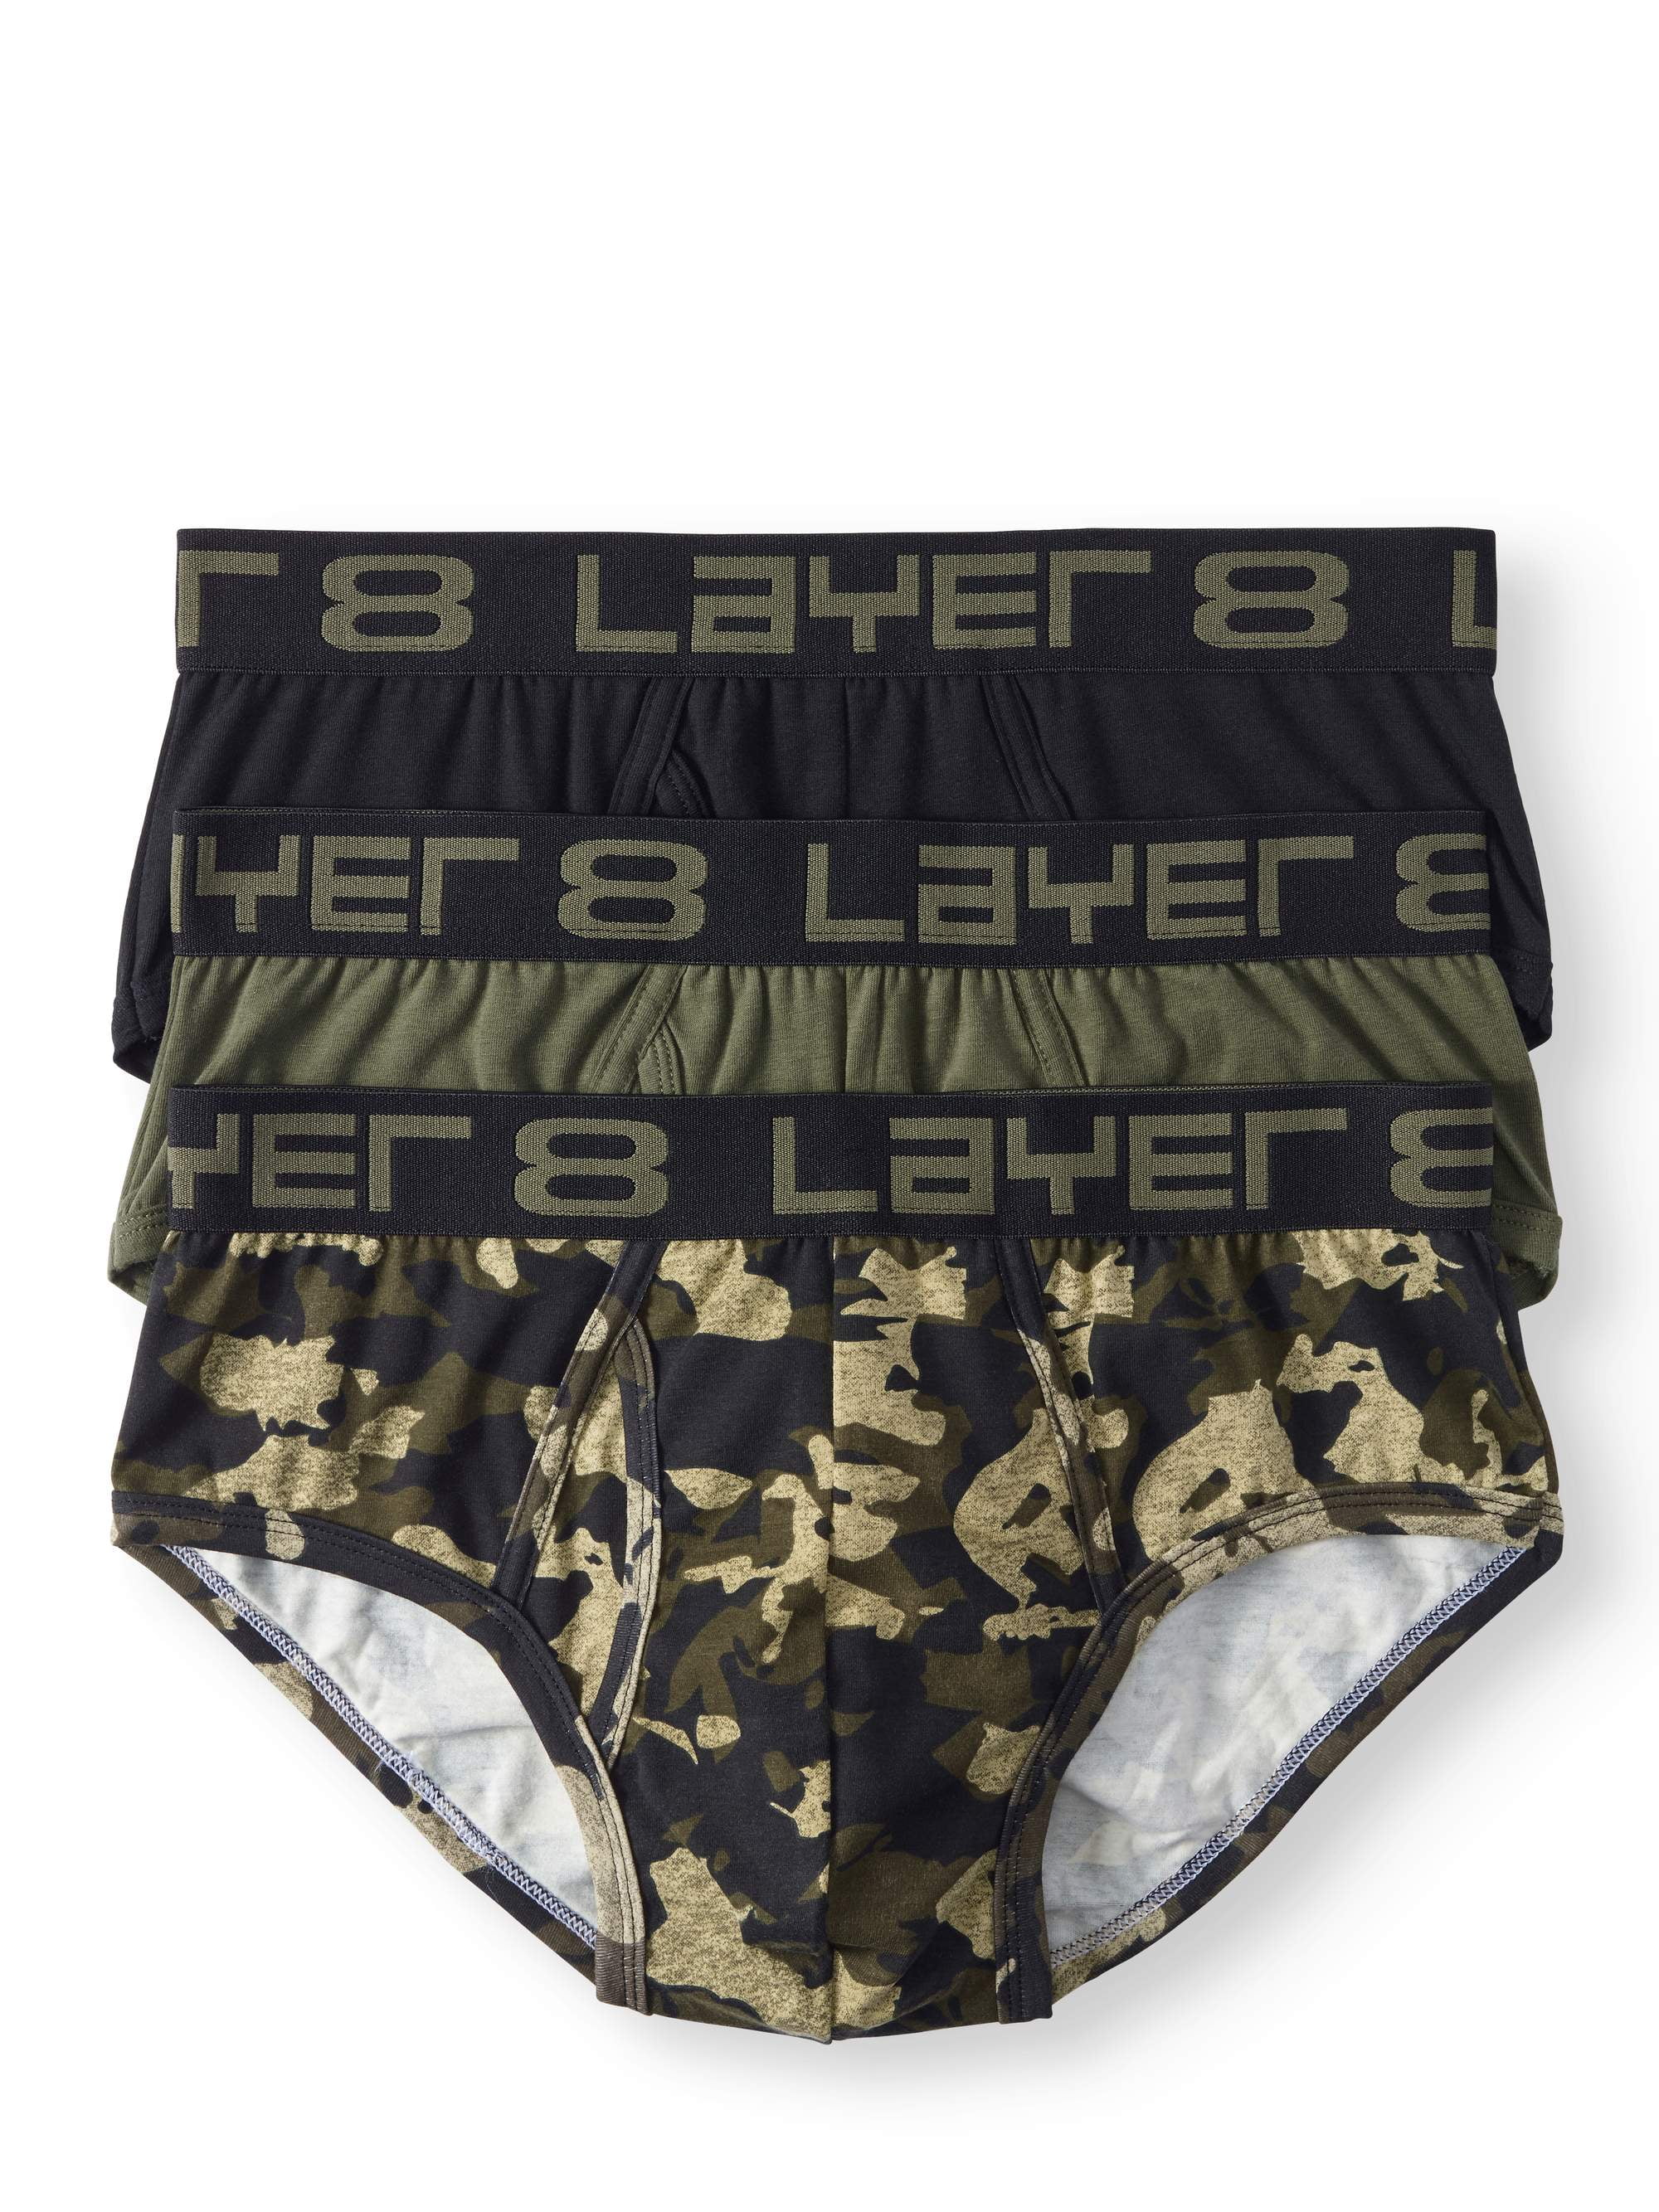 Layer 8 Men's 3-Pack Boxer Briefs Cotton Size L